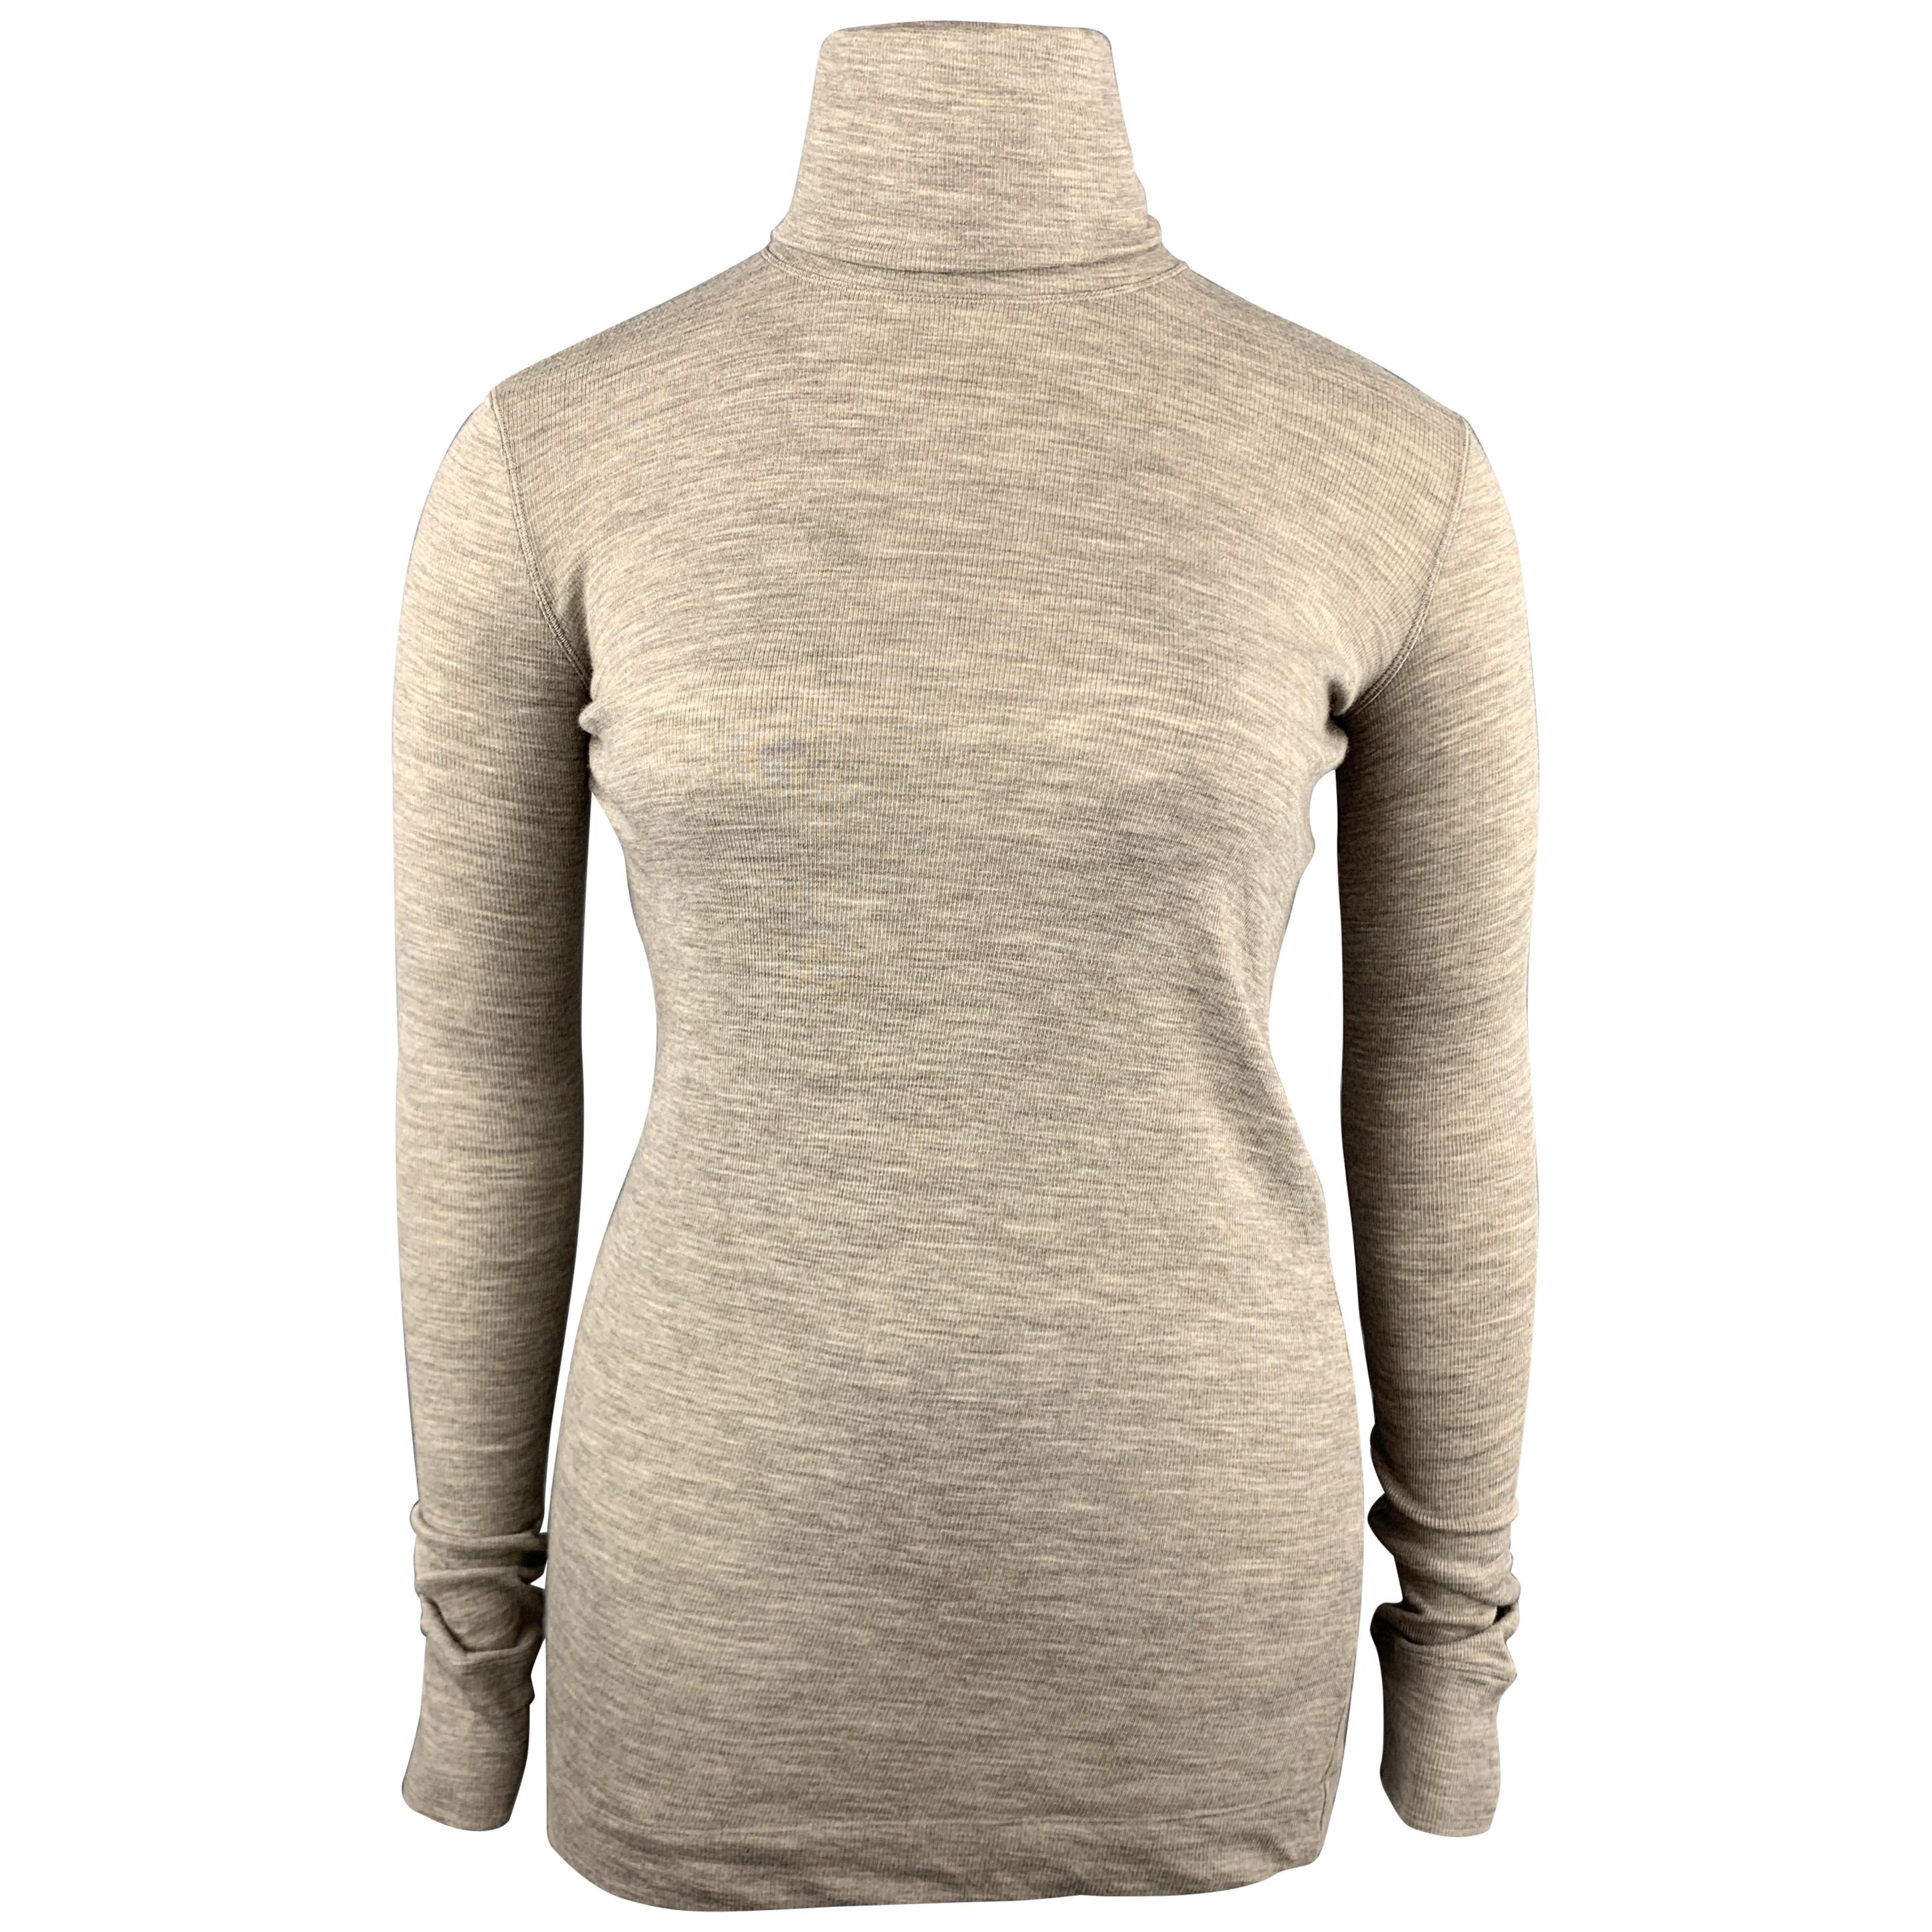 JIL SANDER Size L Oatmeal Beige Wool / Angora Pullover Turtleneck Sweater